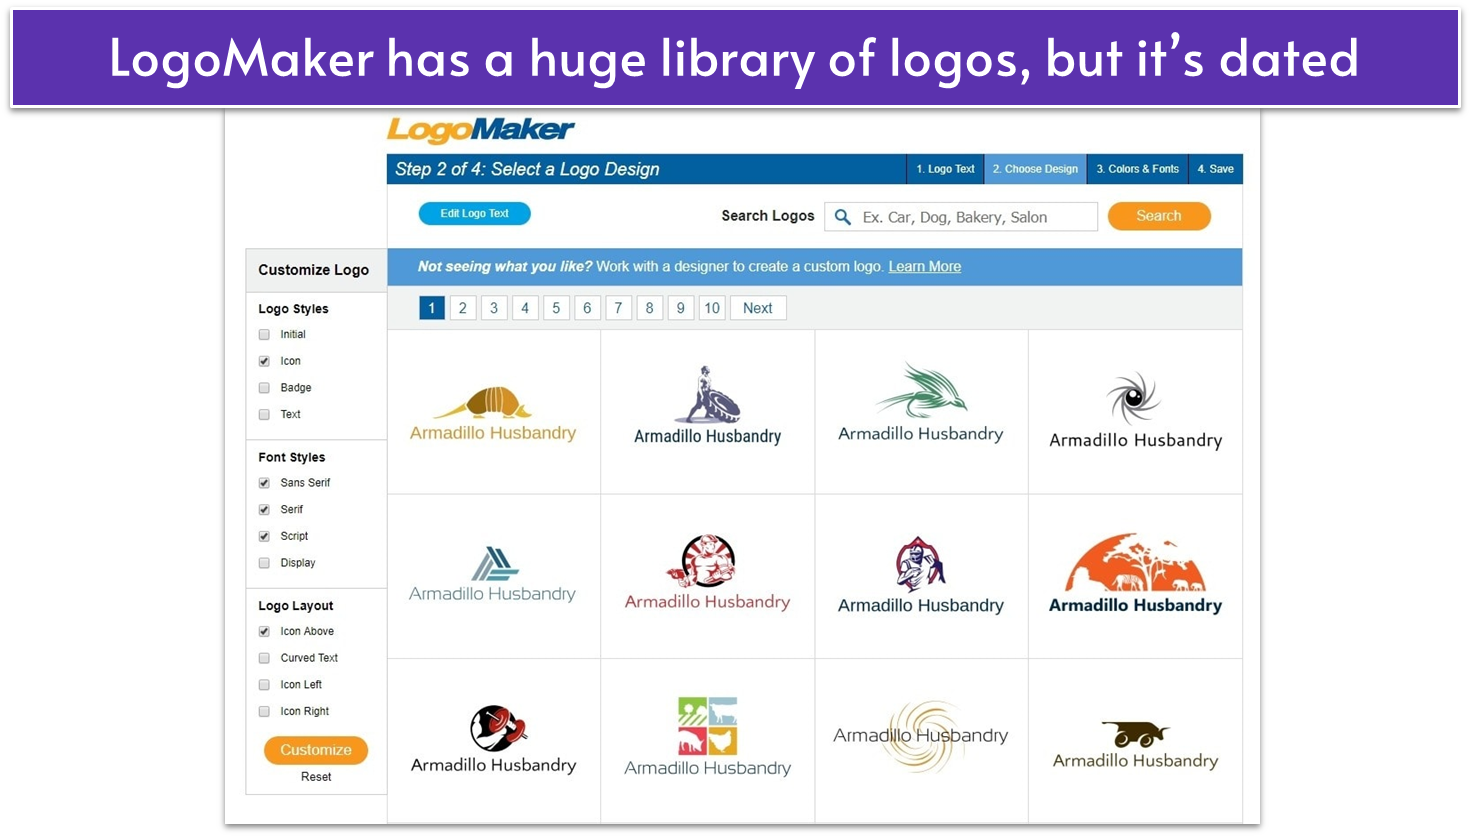 LogoMaker’s logo library list